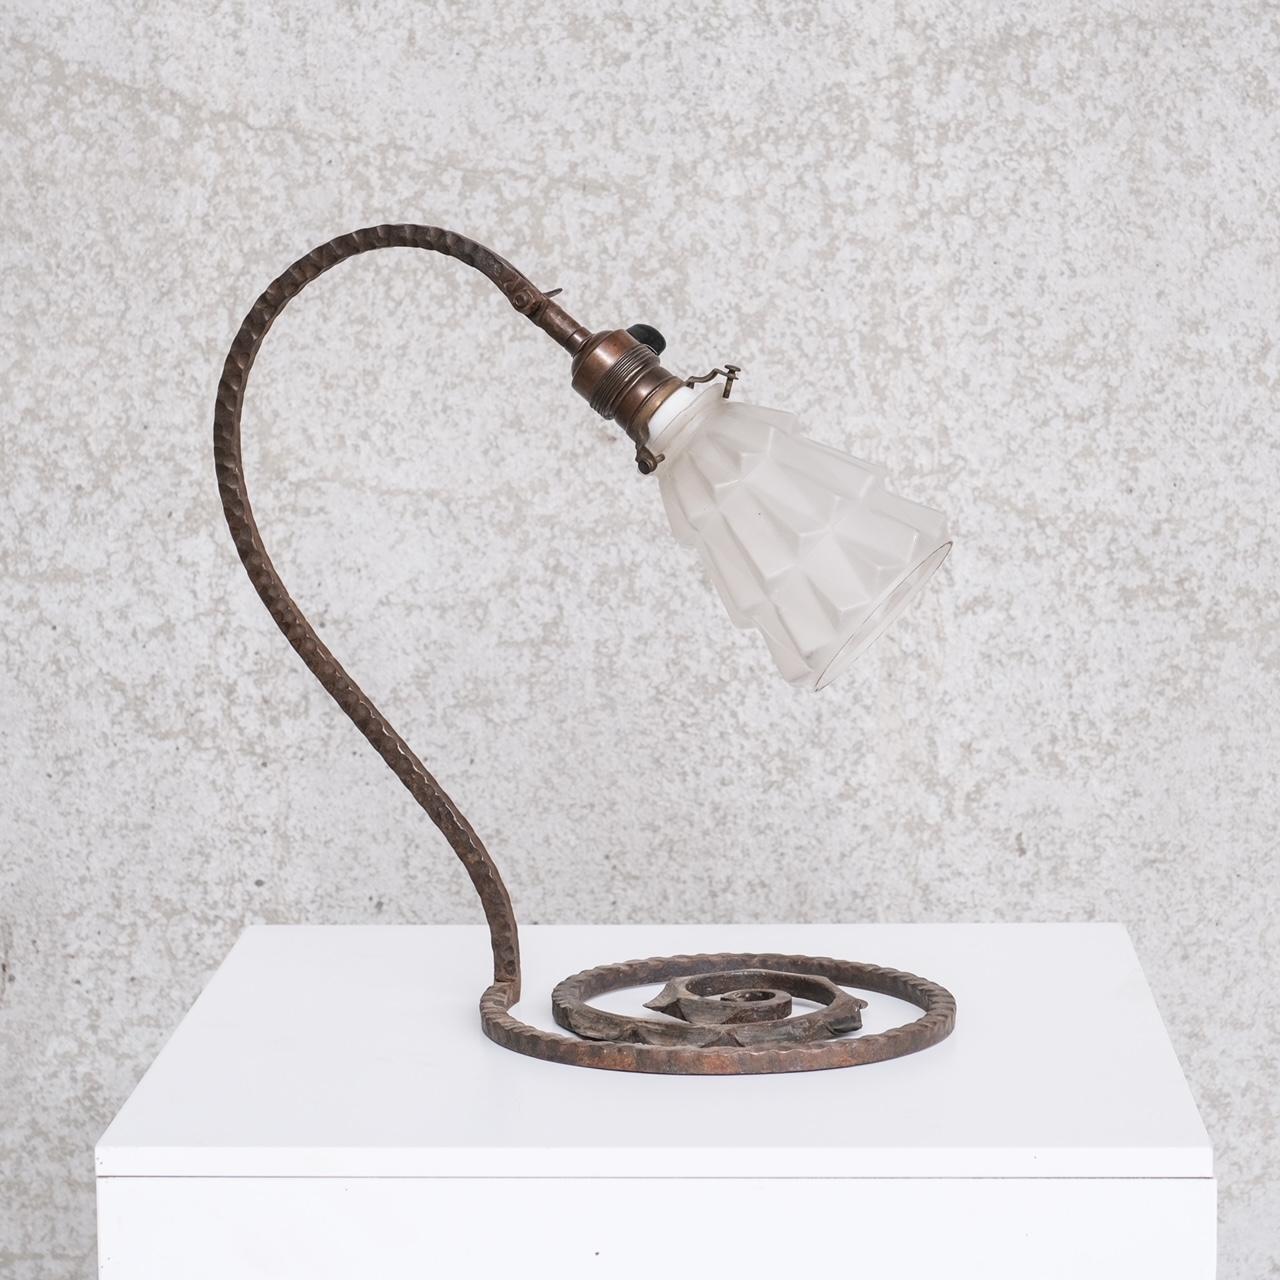 Eine stilvolle, gut geformte Tischlampe aus Eisen.

Frankreich, ca. 1930er Jahre.

Mit geätztem Glasschirm, der sich nach oben und unten verstellen lässt.

Guter Vintage-Zustand, einige Schrammen und Abnutzungserscheinungen, die dem Alter